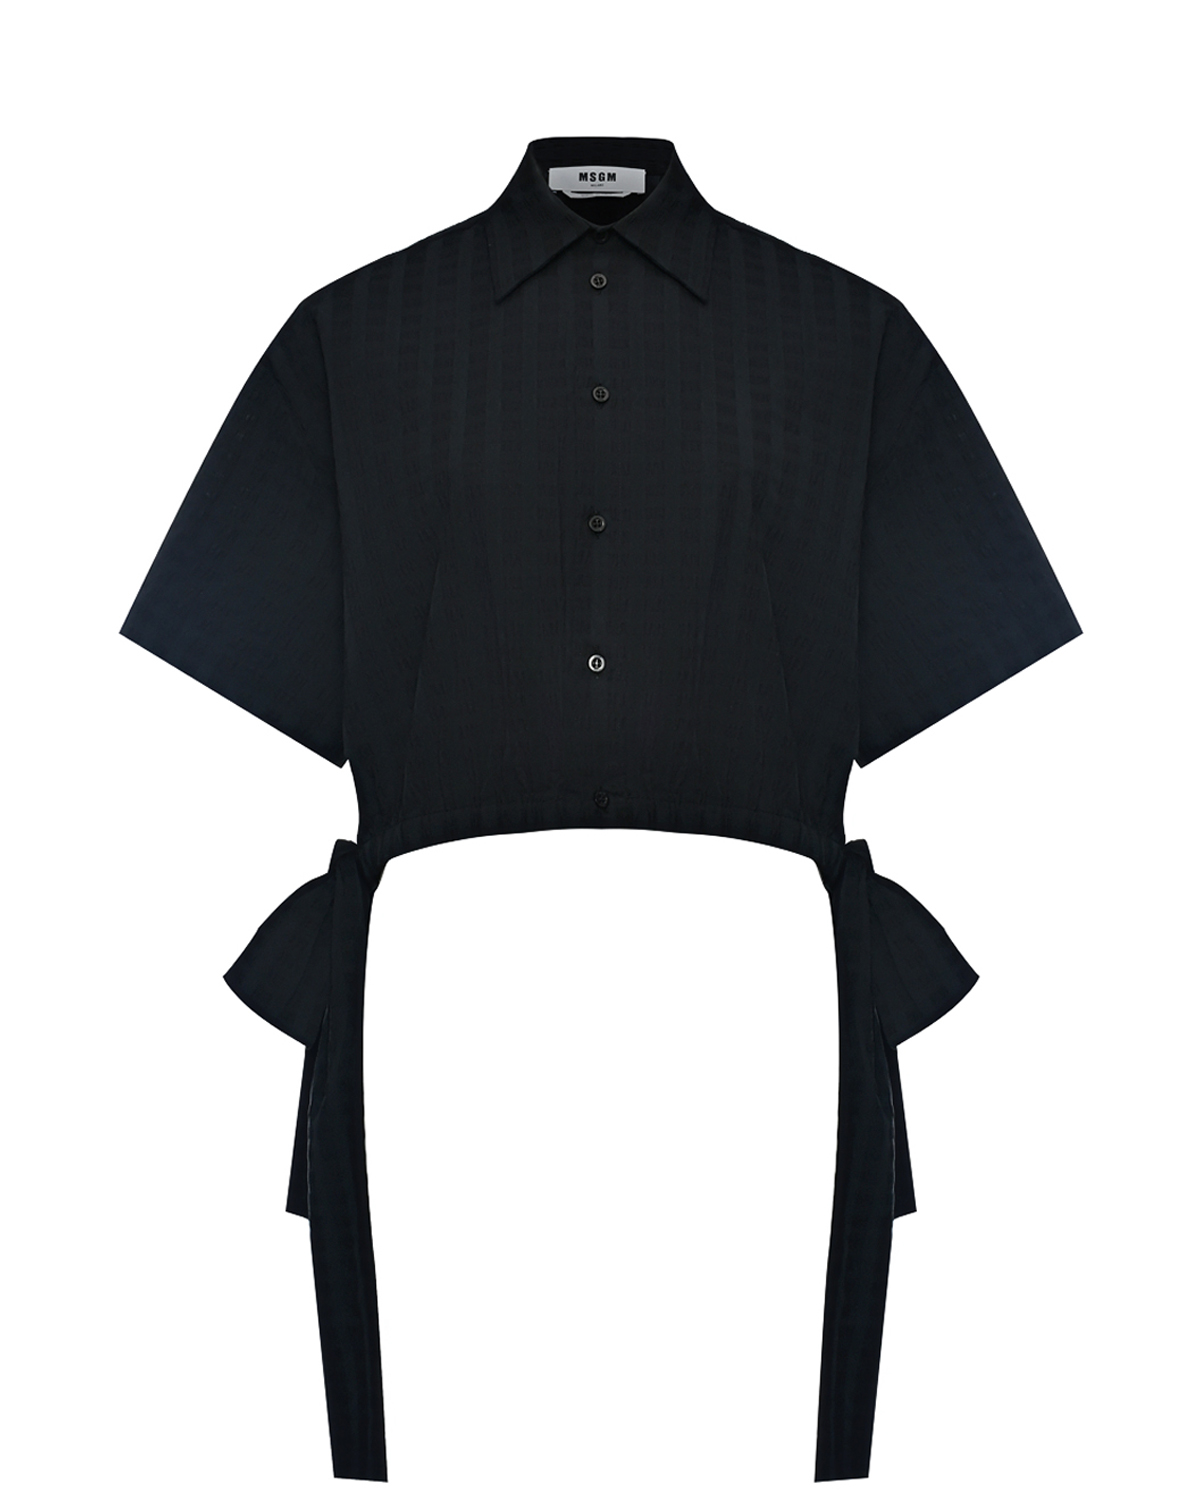 Рубашка укороченная с бантами MSGM, размер 40, цвет черный - фото 1